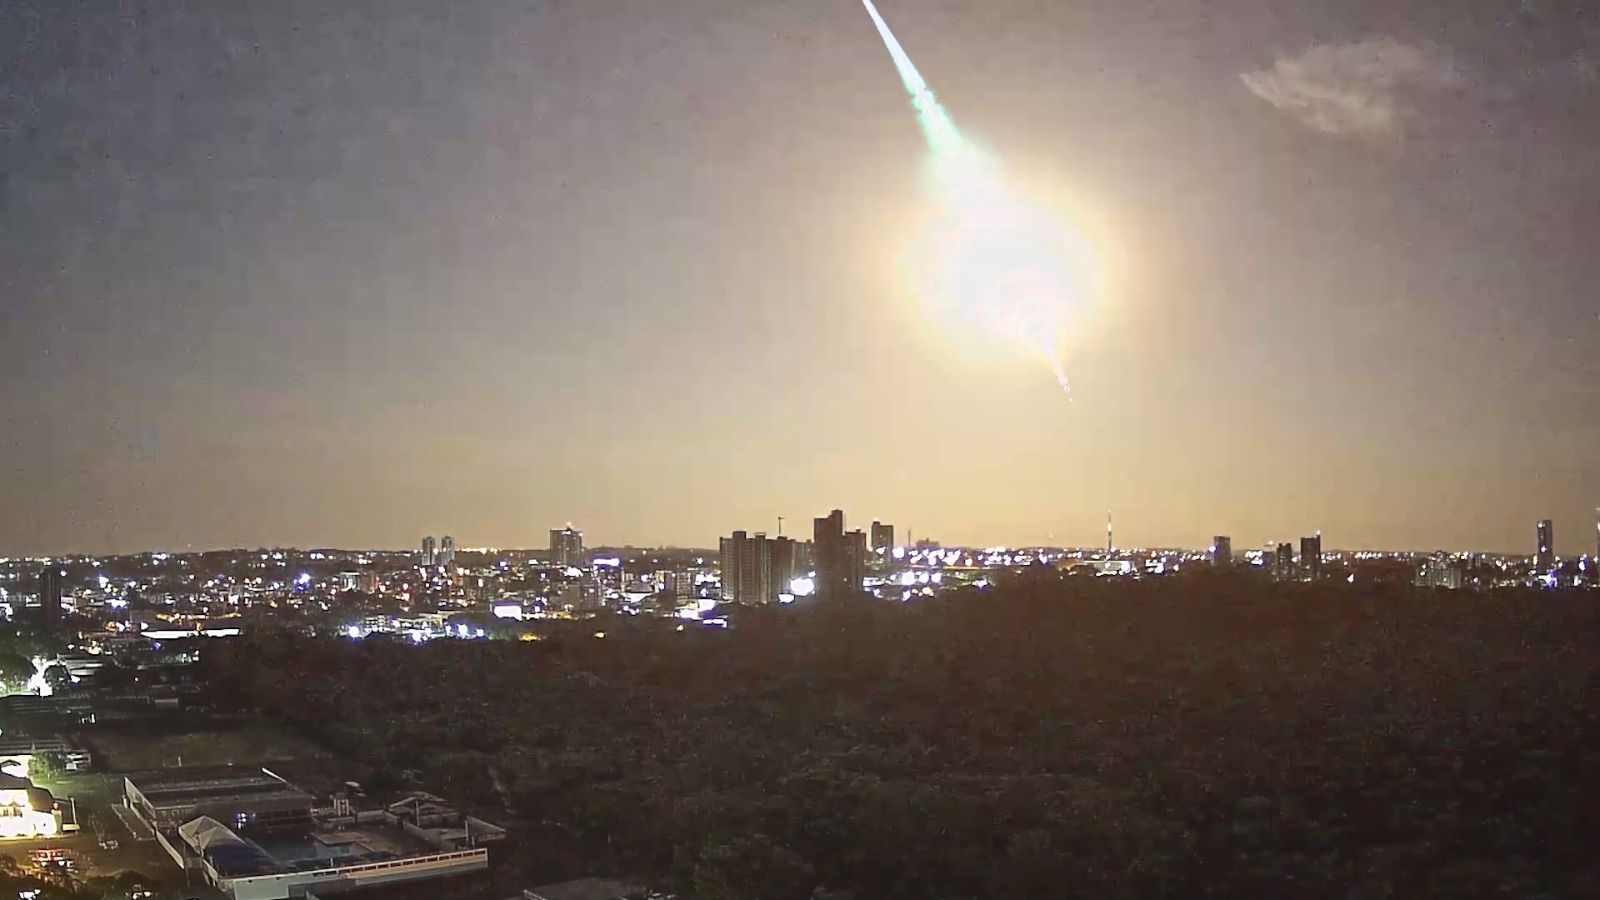 Meteoroide illumina il cielo in Francia. Esa: "Scoperto 5 ore prima dell'impatto"